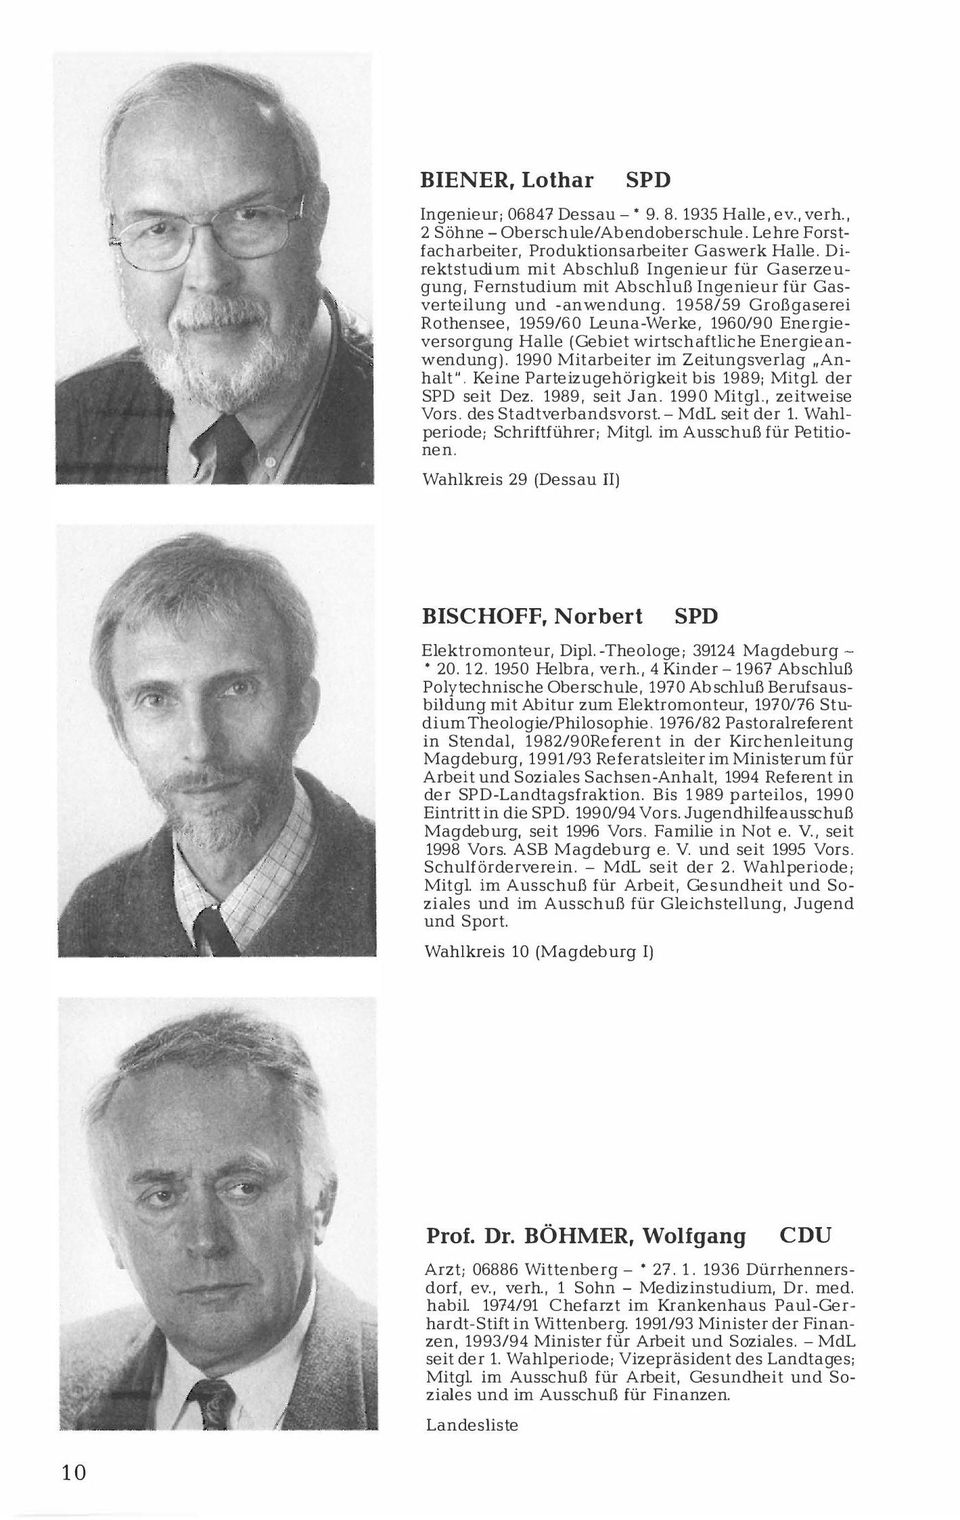 1958/59 Großgaserei Rothensee, 1959/60 Leuna-Werke, 1960/90 Energieversorgung Halle (Gebiet wirtschaftliche Energieanwendung). 1990 Mitarbeiter im Zeitungsverlag "Anhalt".